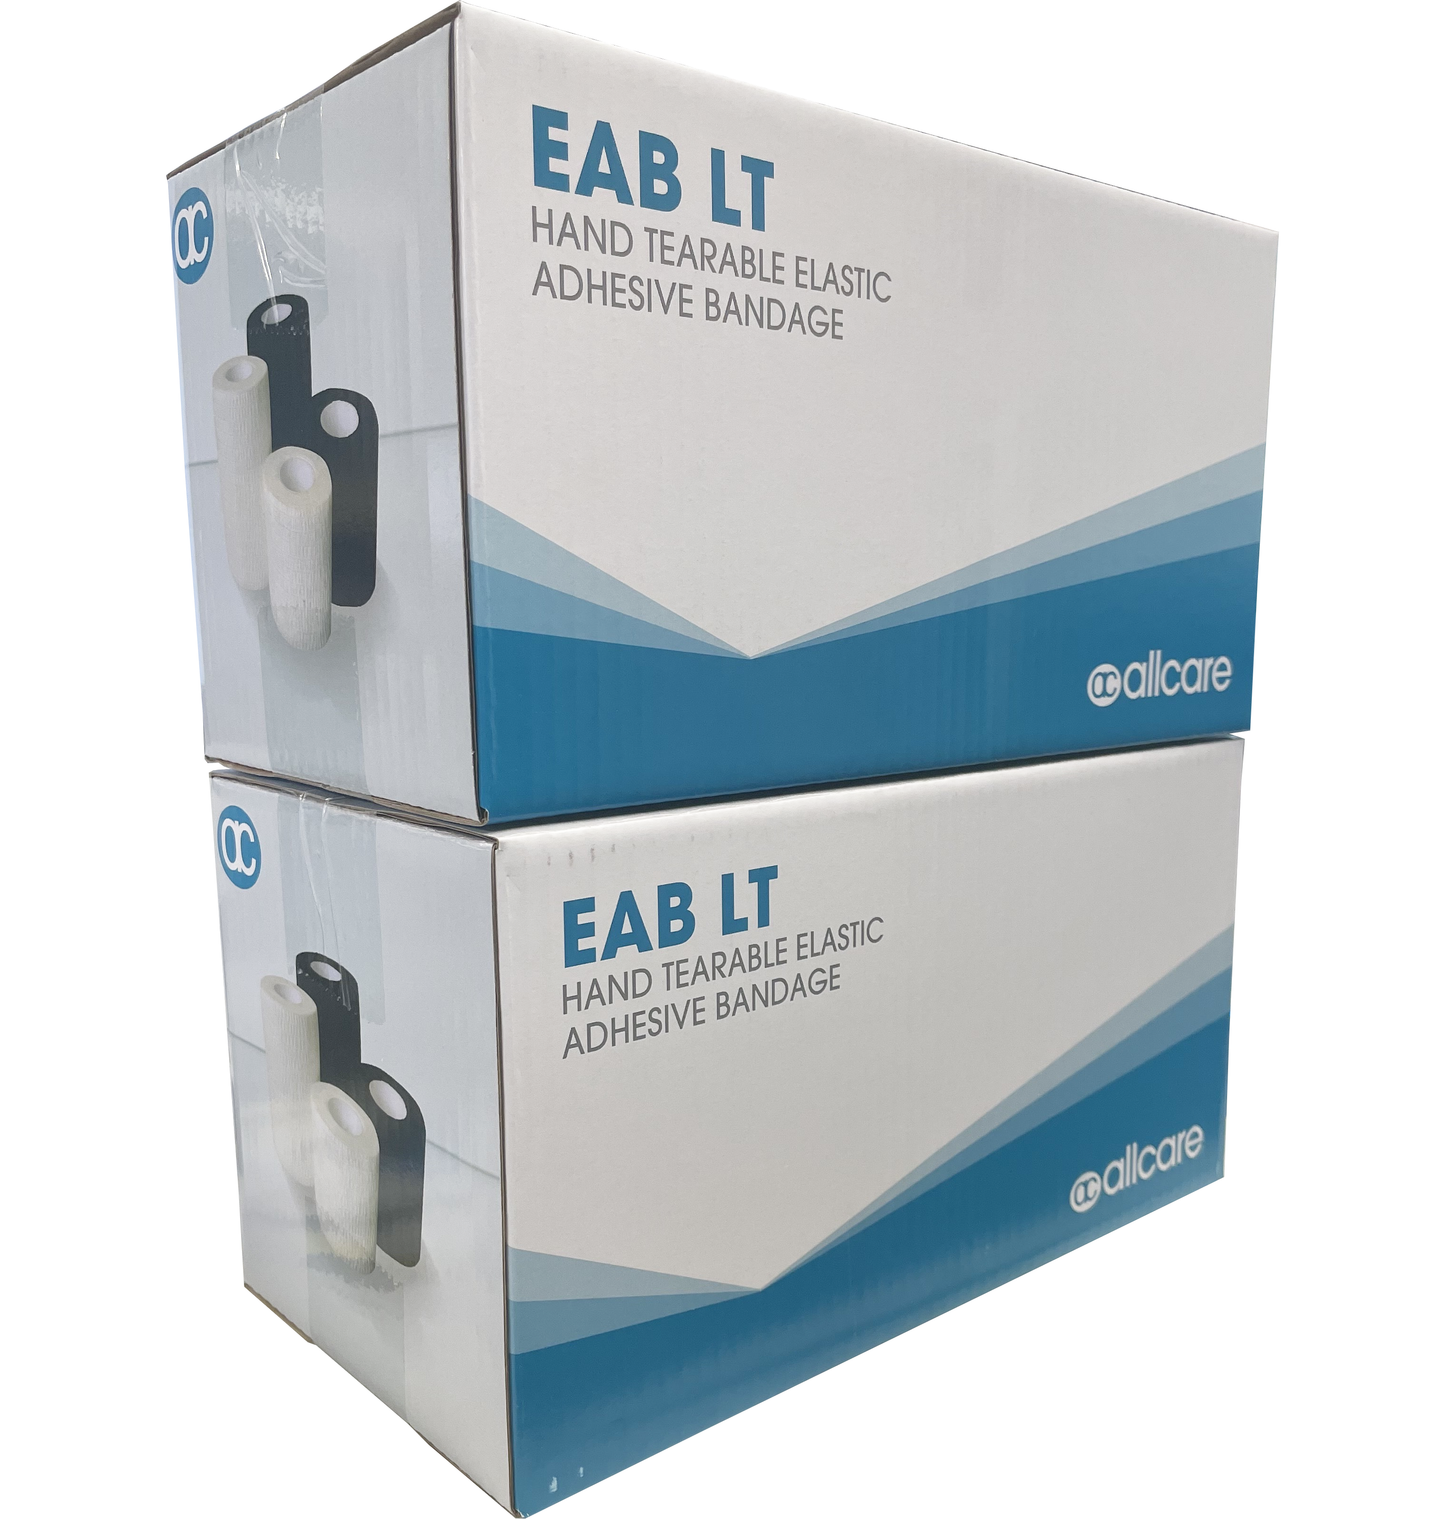 E.A.B LIGHT TAPE - HAND TEARABLE ELASTIC ADHESIVE BANDAGE